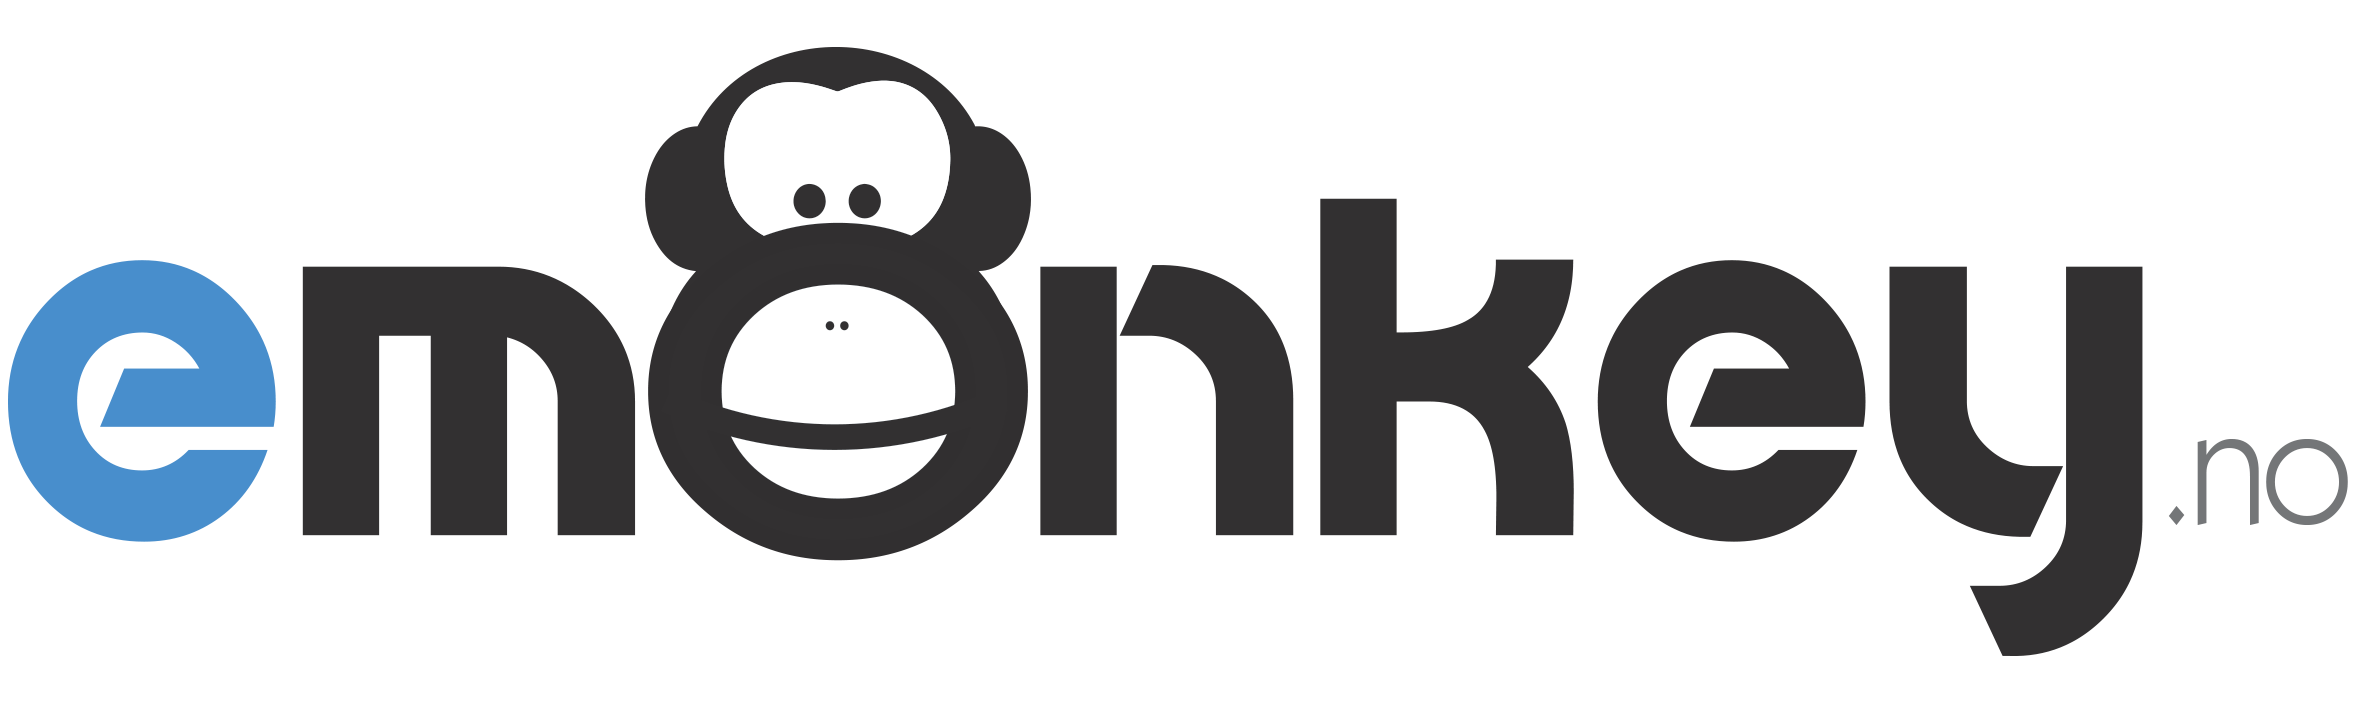 eMonkey logo